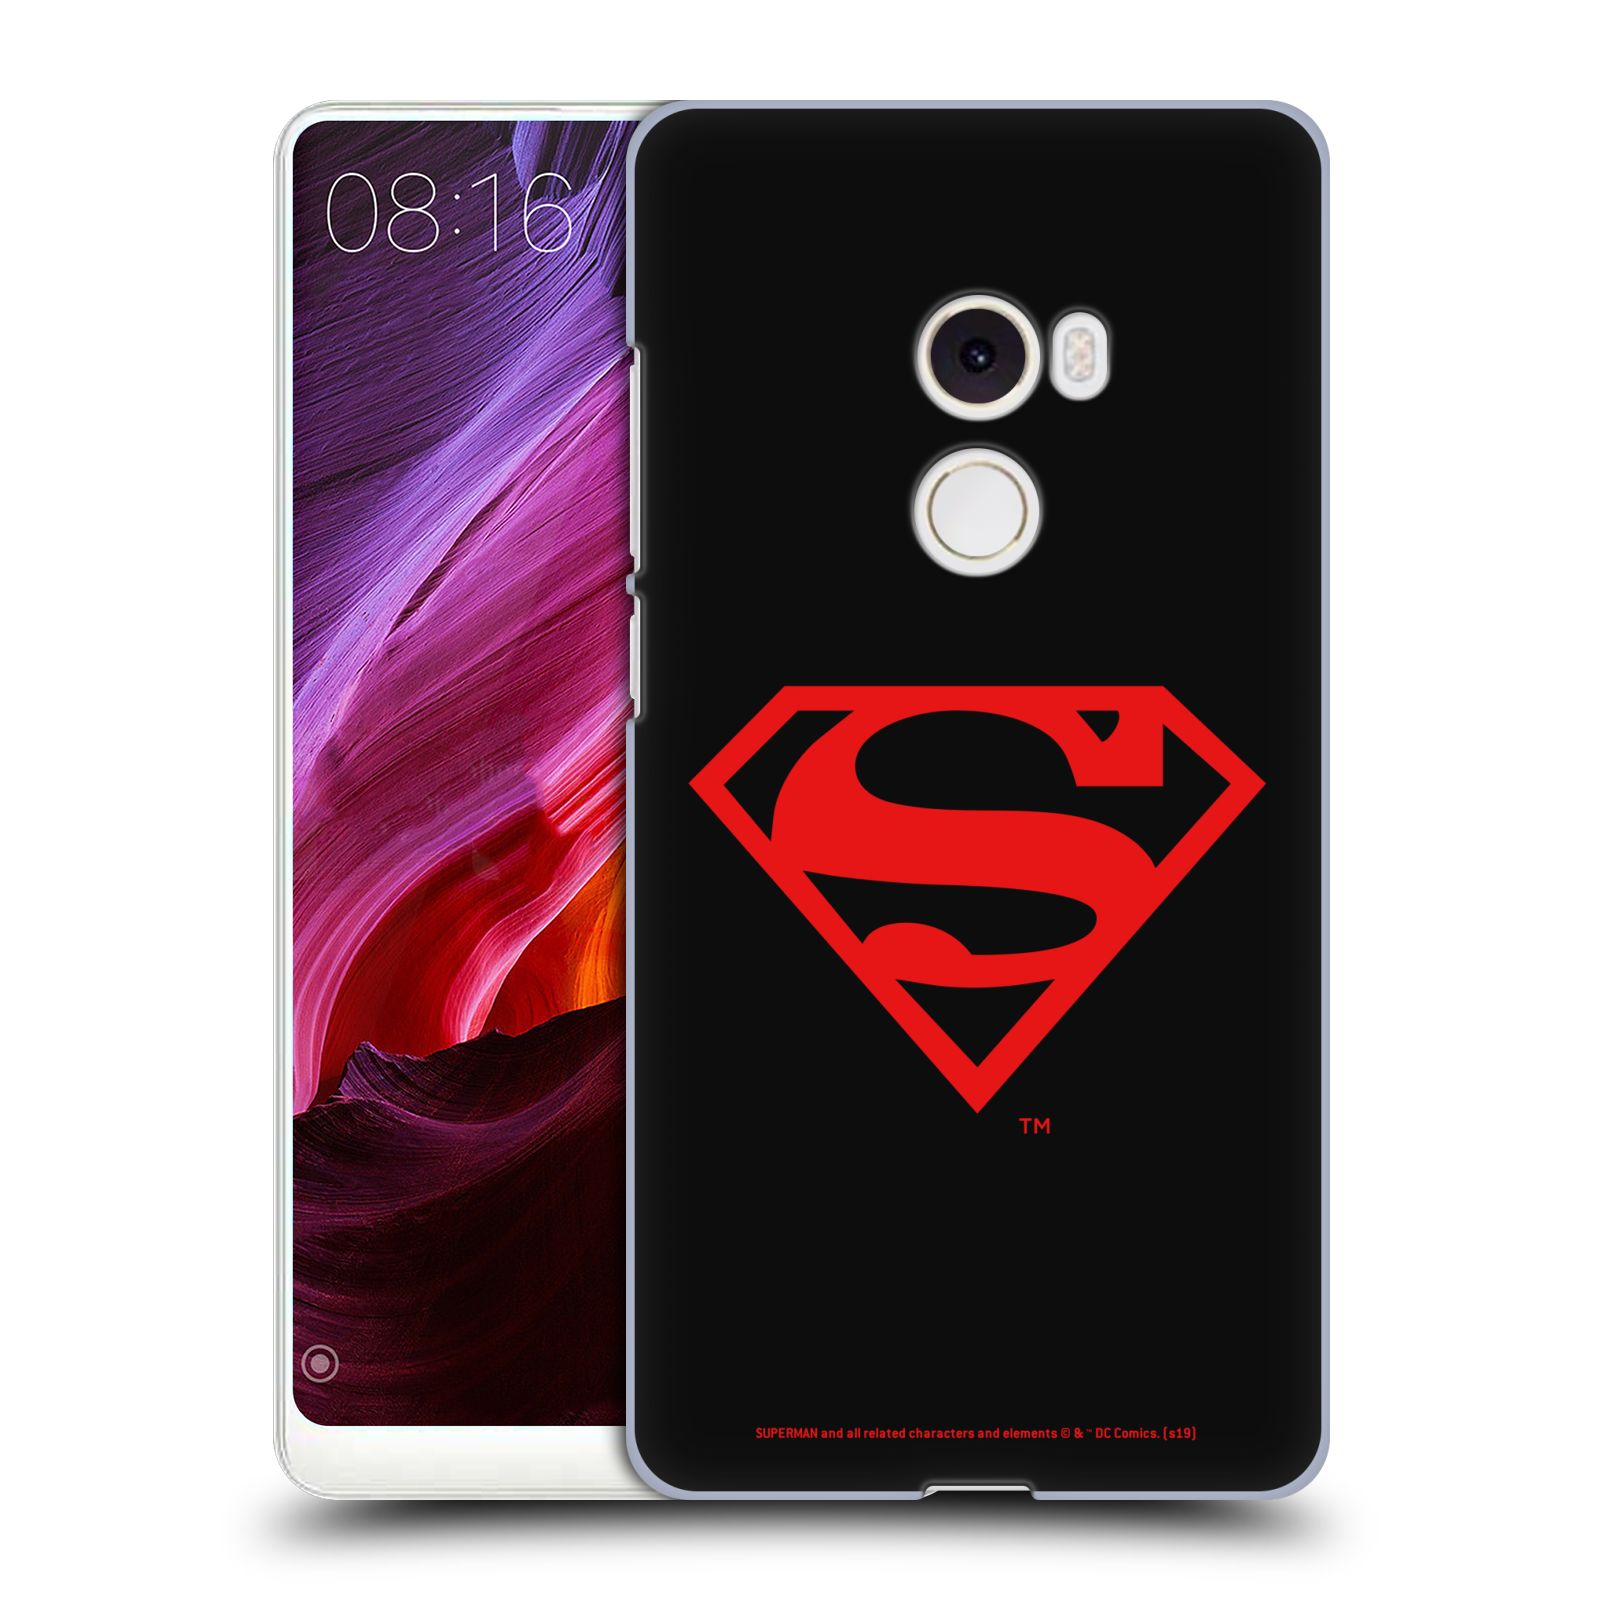 Pouzdro na mobil Xiaomi Mi Mix 2 - HEAD CASE - DC komix Superman červený znak černé pozadí